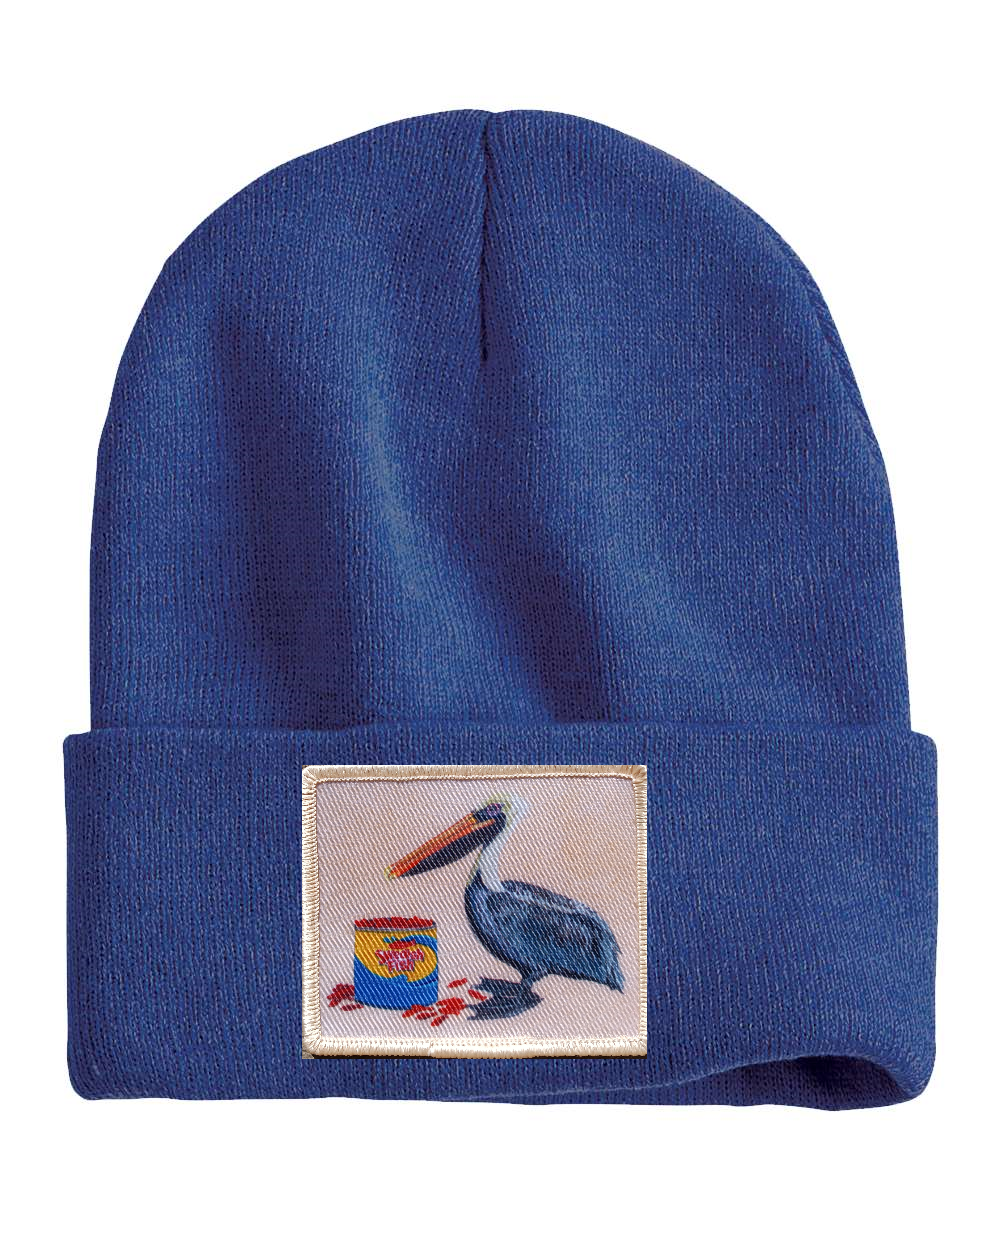 Gone Fishin' Pelican Beanie Hats Flyn_Costello_Art   